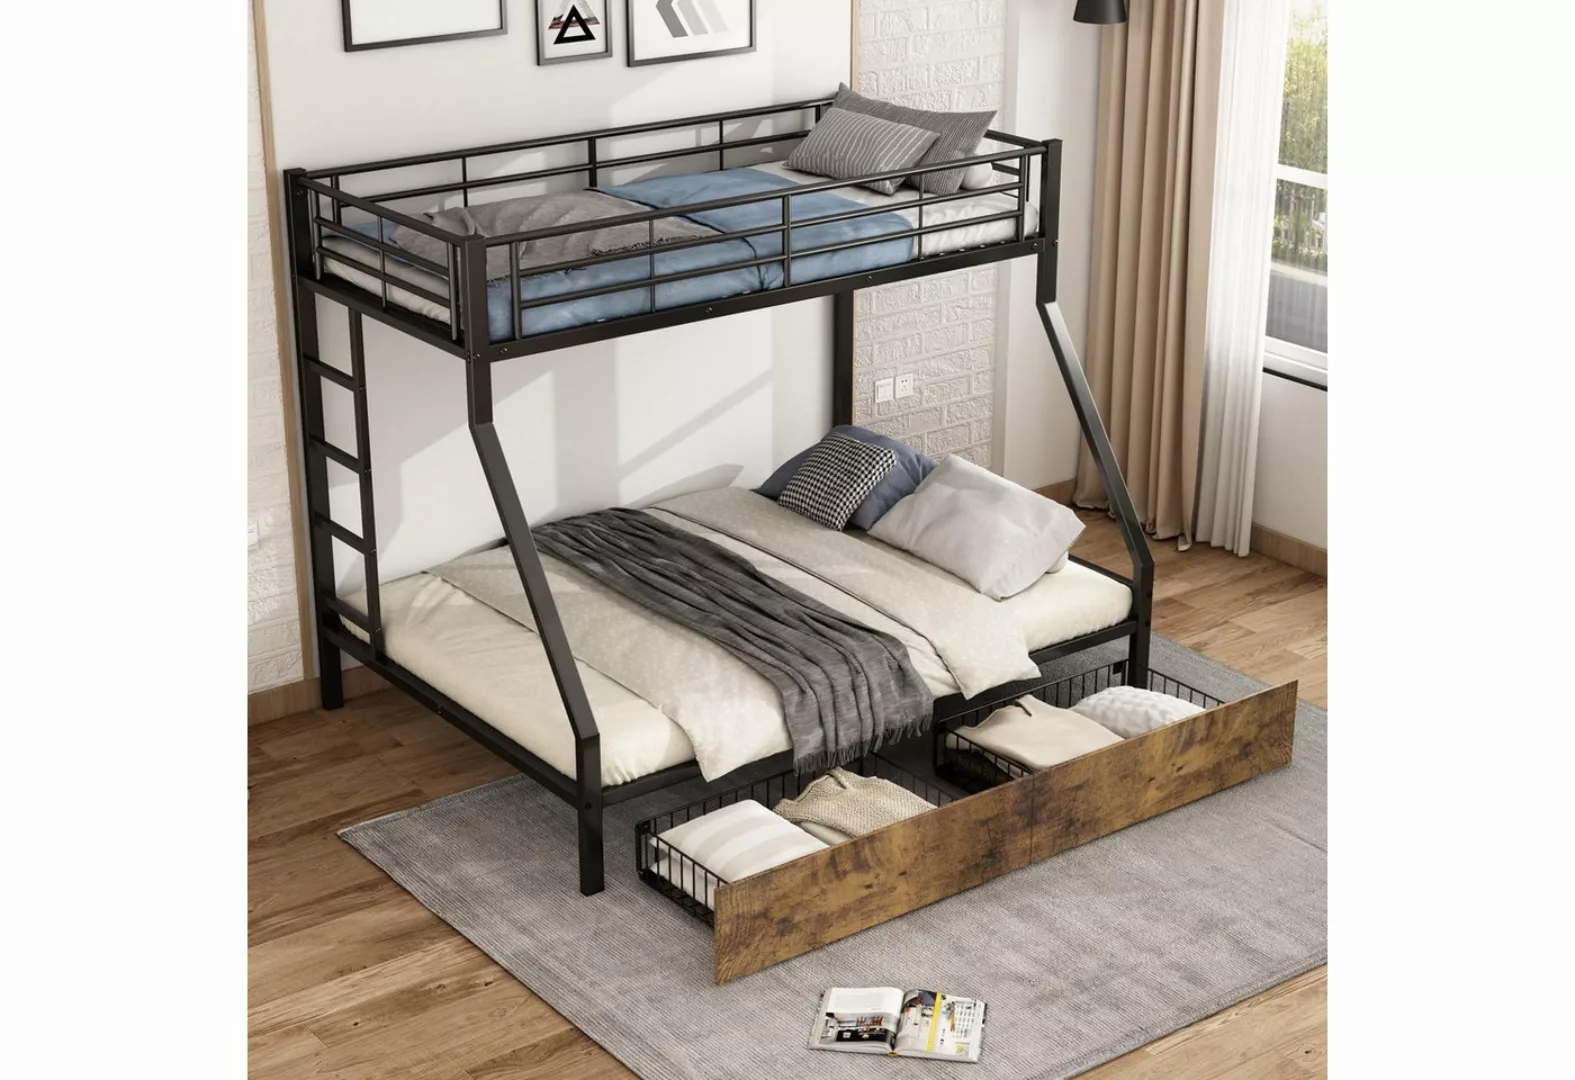 HAUSS SPLOE Etagenbett mit 2 Schubladen, 4 Seitengitter am oberen Bett, Eis günstig online kaufen